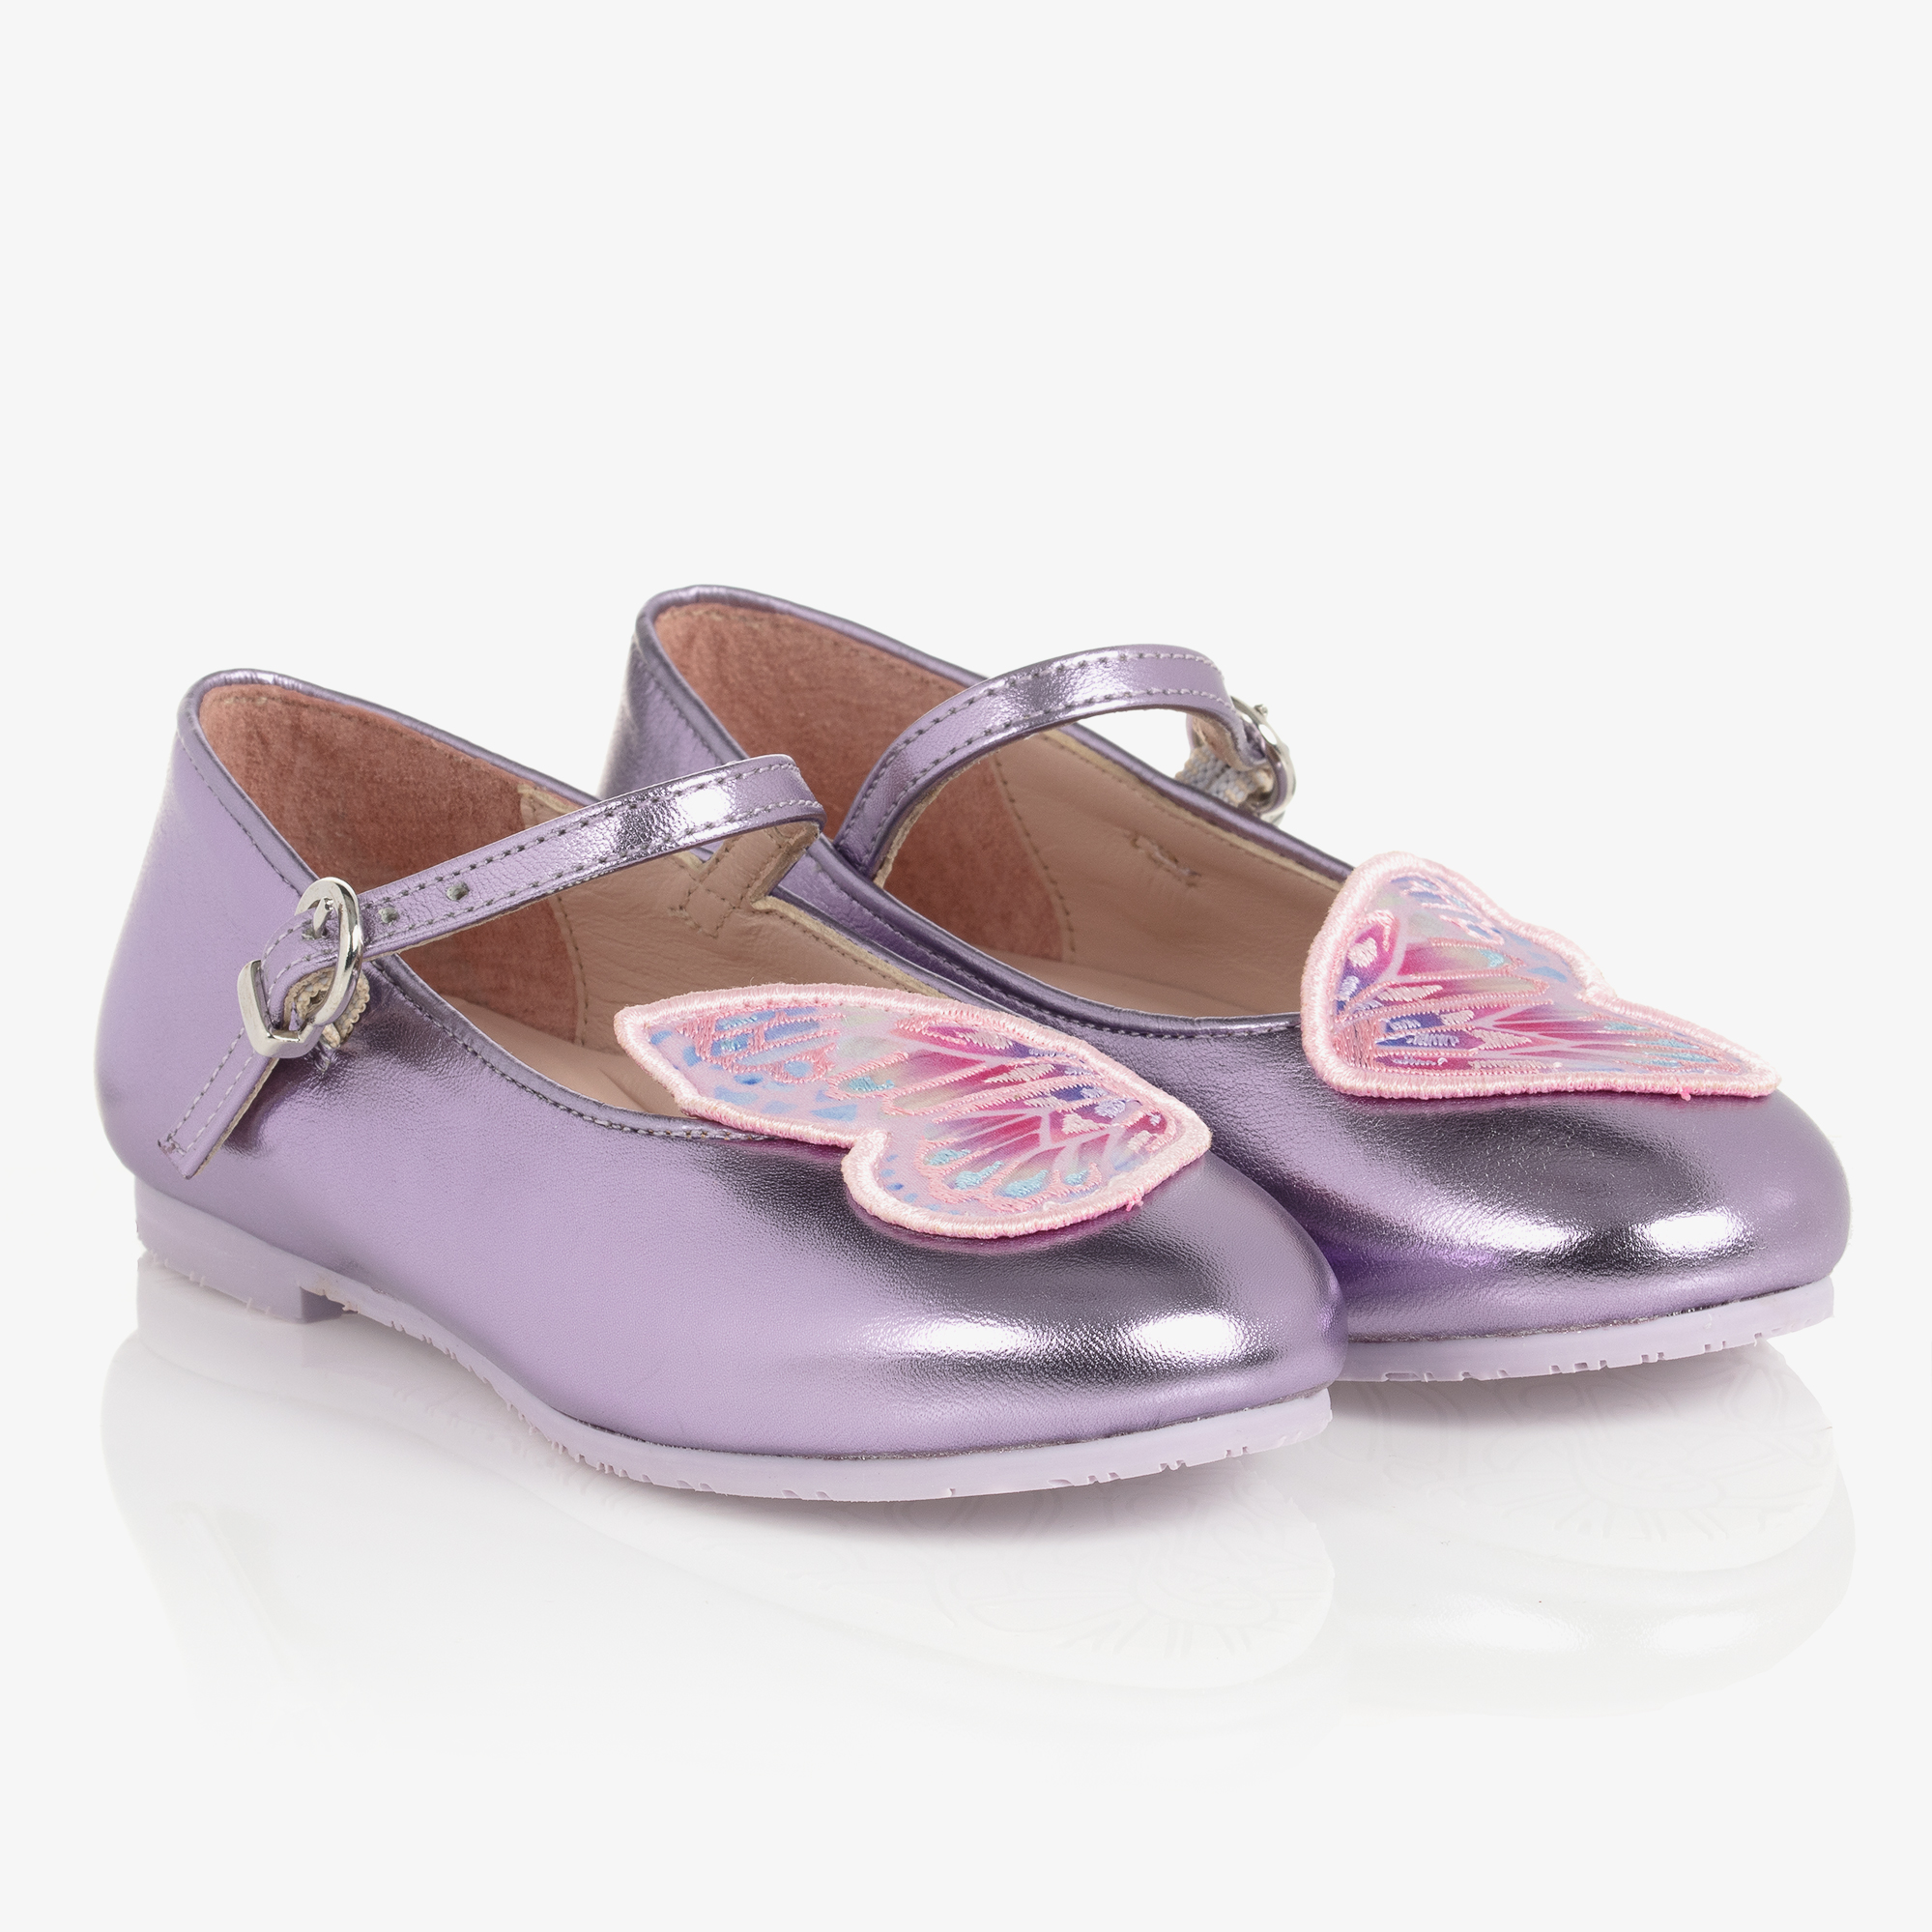 Sophia Webster Mini - Silver Glitter Butterfly Shoes | Childrensalon